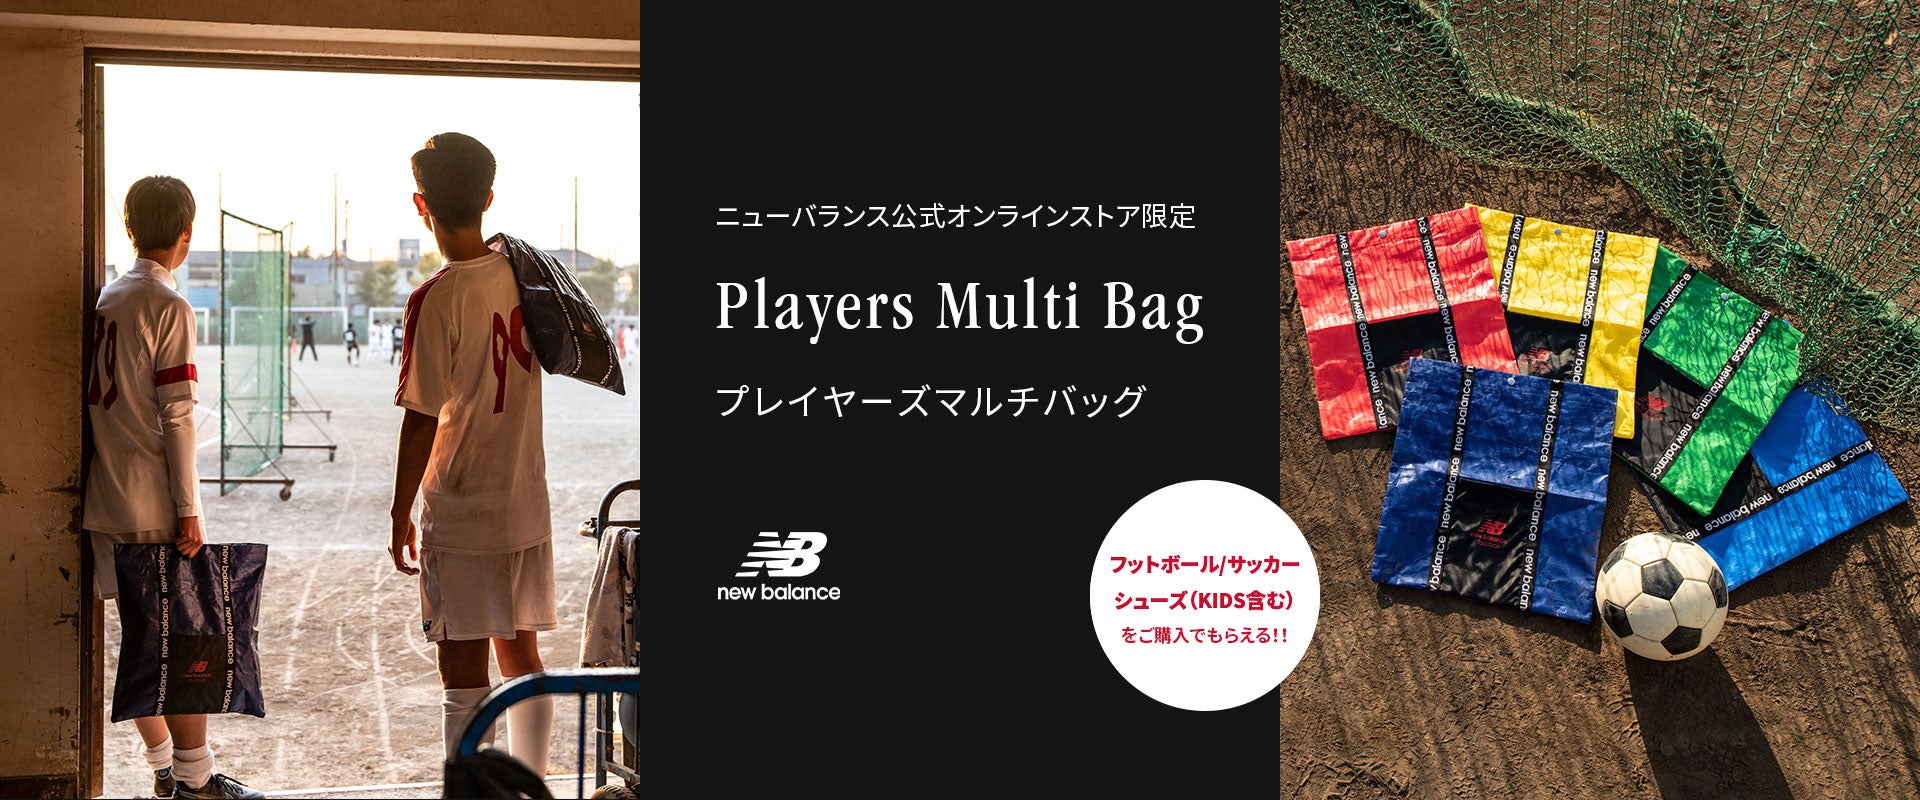 ニューバランス公式オンラインストア限定 Players Multi Bag プレイヤーズマルチバッグ. フットボール/サッカー シューズ（KIDS含む）の商品を購入でもらえる！